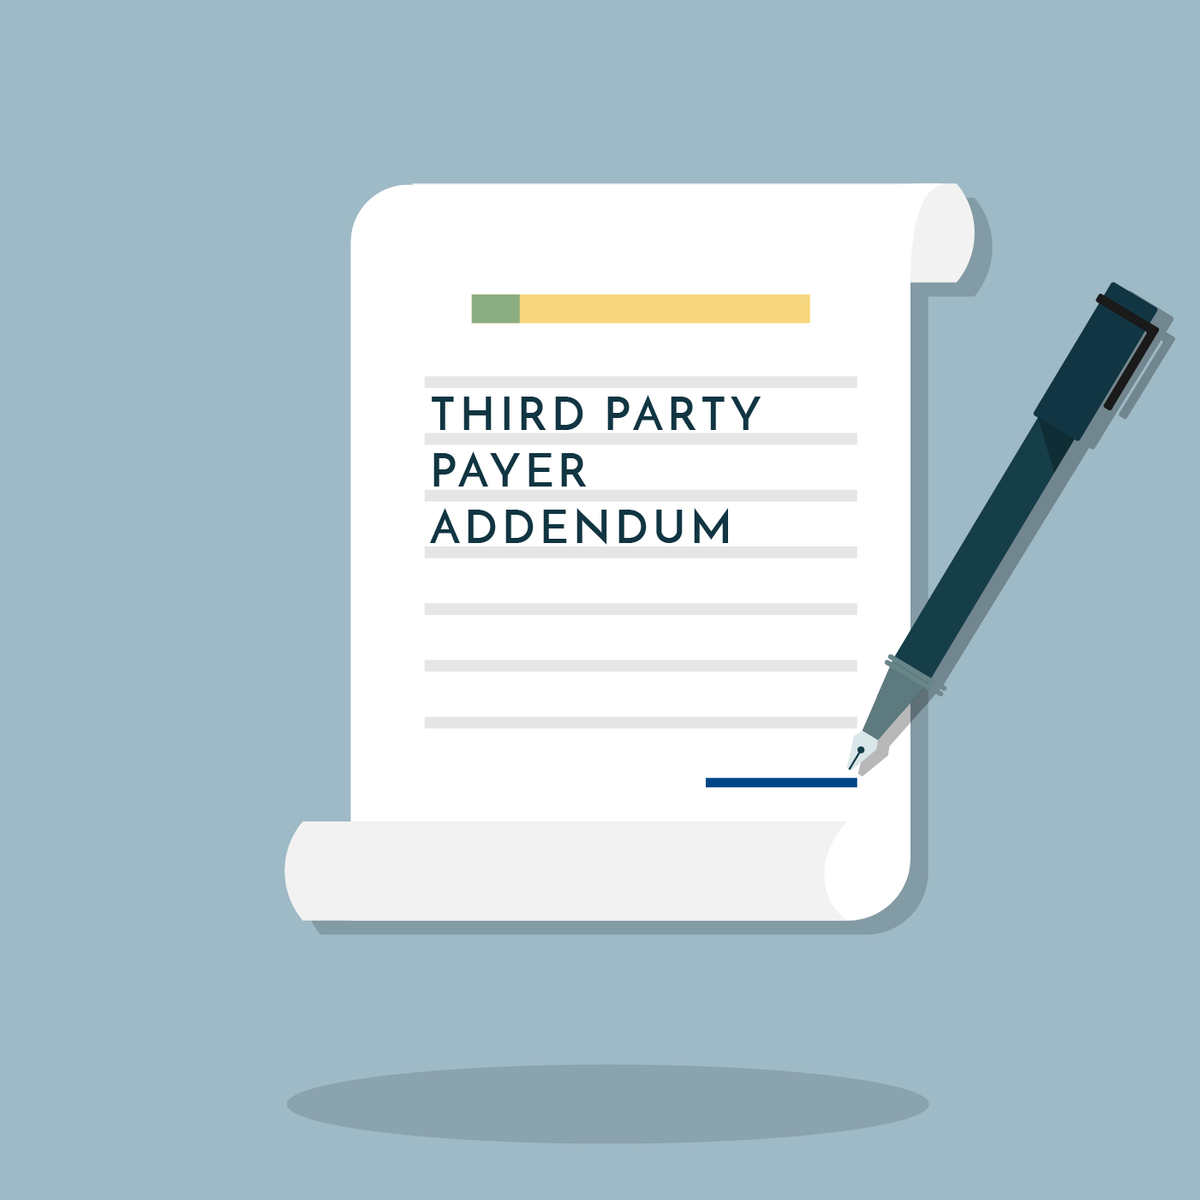 Third Party Payer Addendum